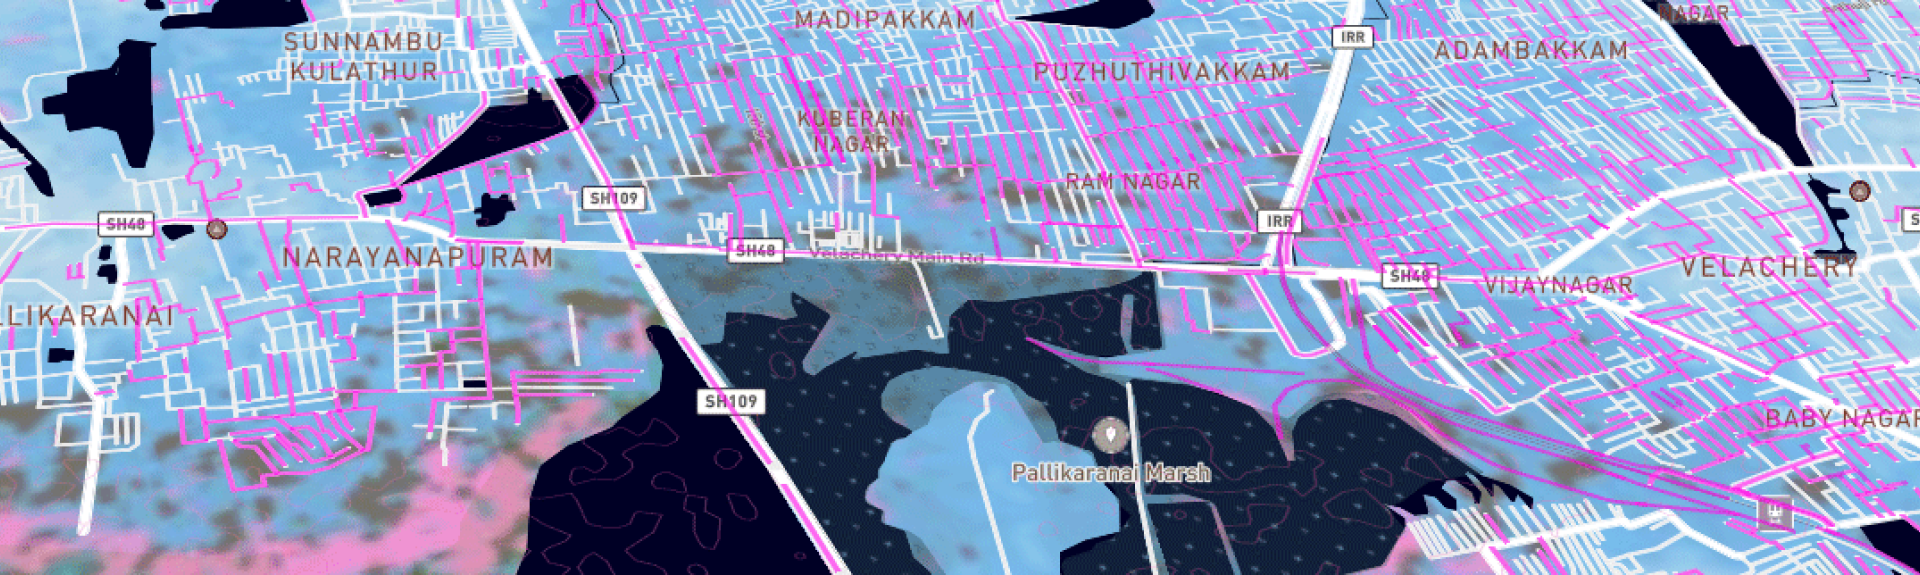 visualization of Chennai, India flood map